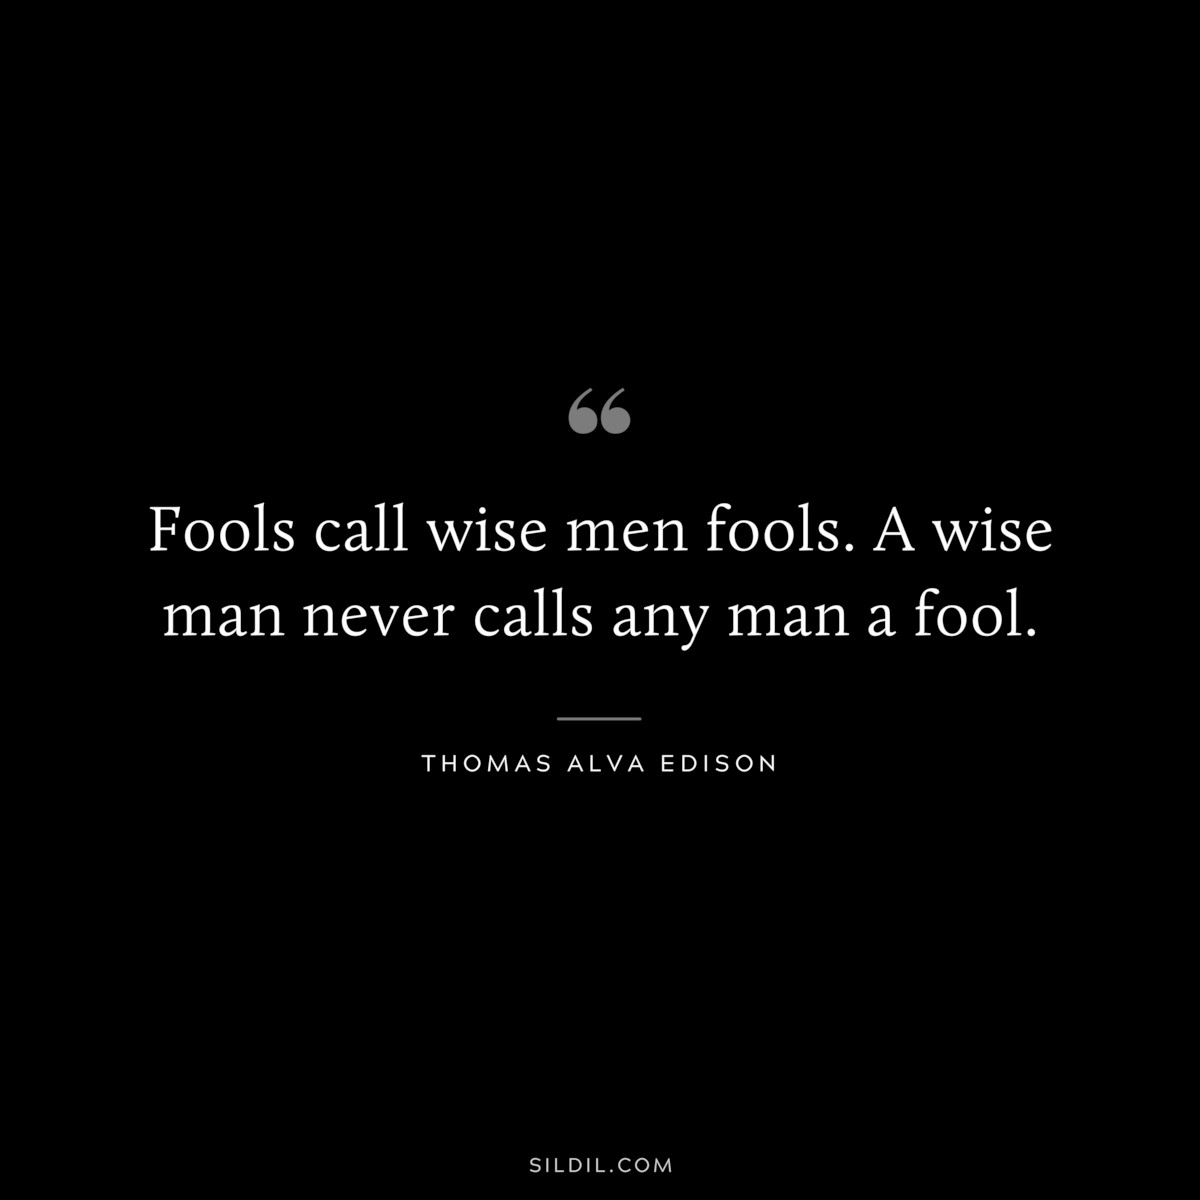 Fools call wise men fools. A wise man never calls any man a fool. ― Thomas Alva Edison